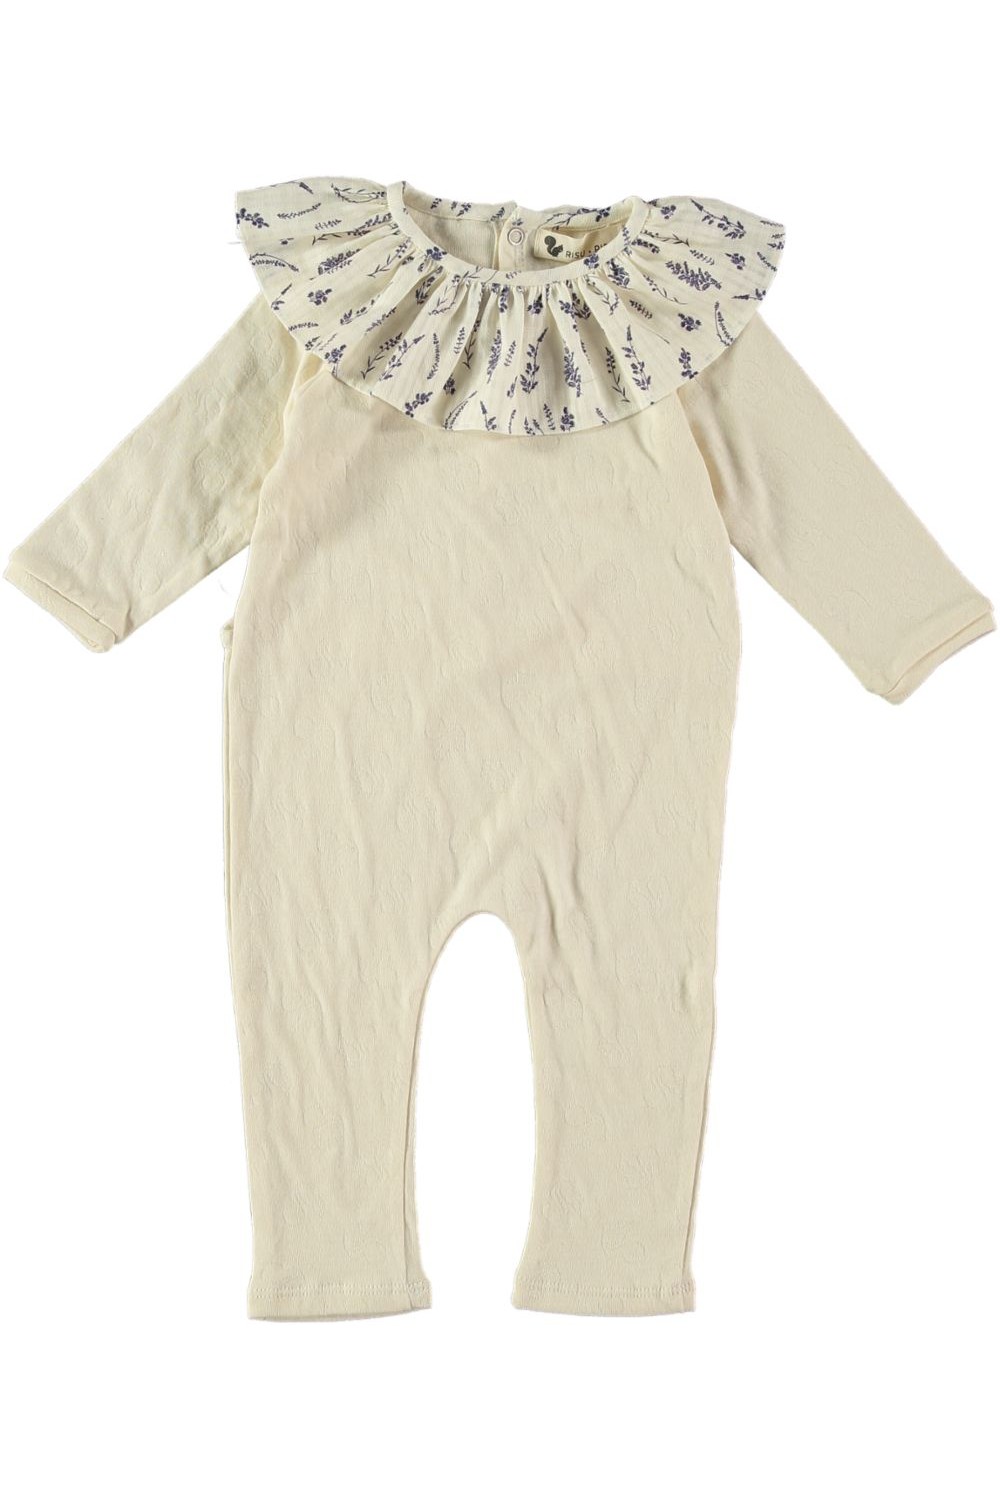 pyjama bébé senza papyrus/lavander en coton bio rose